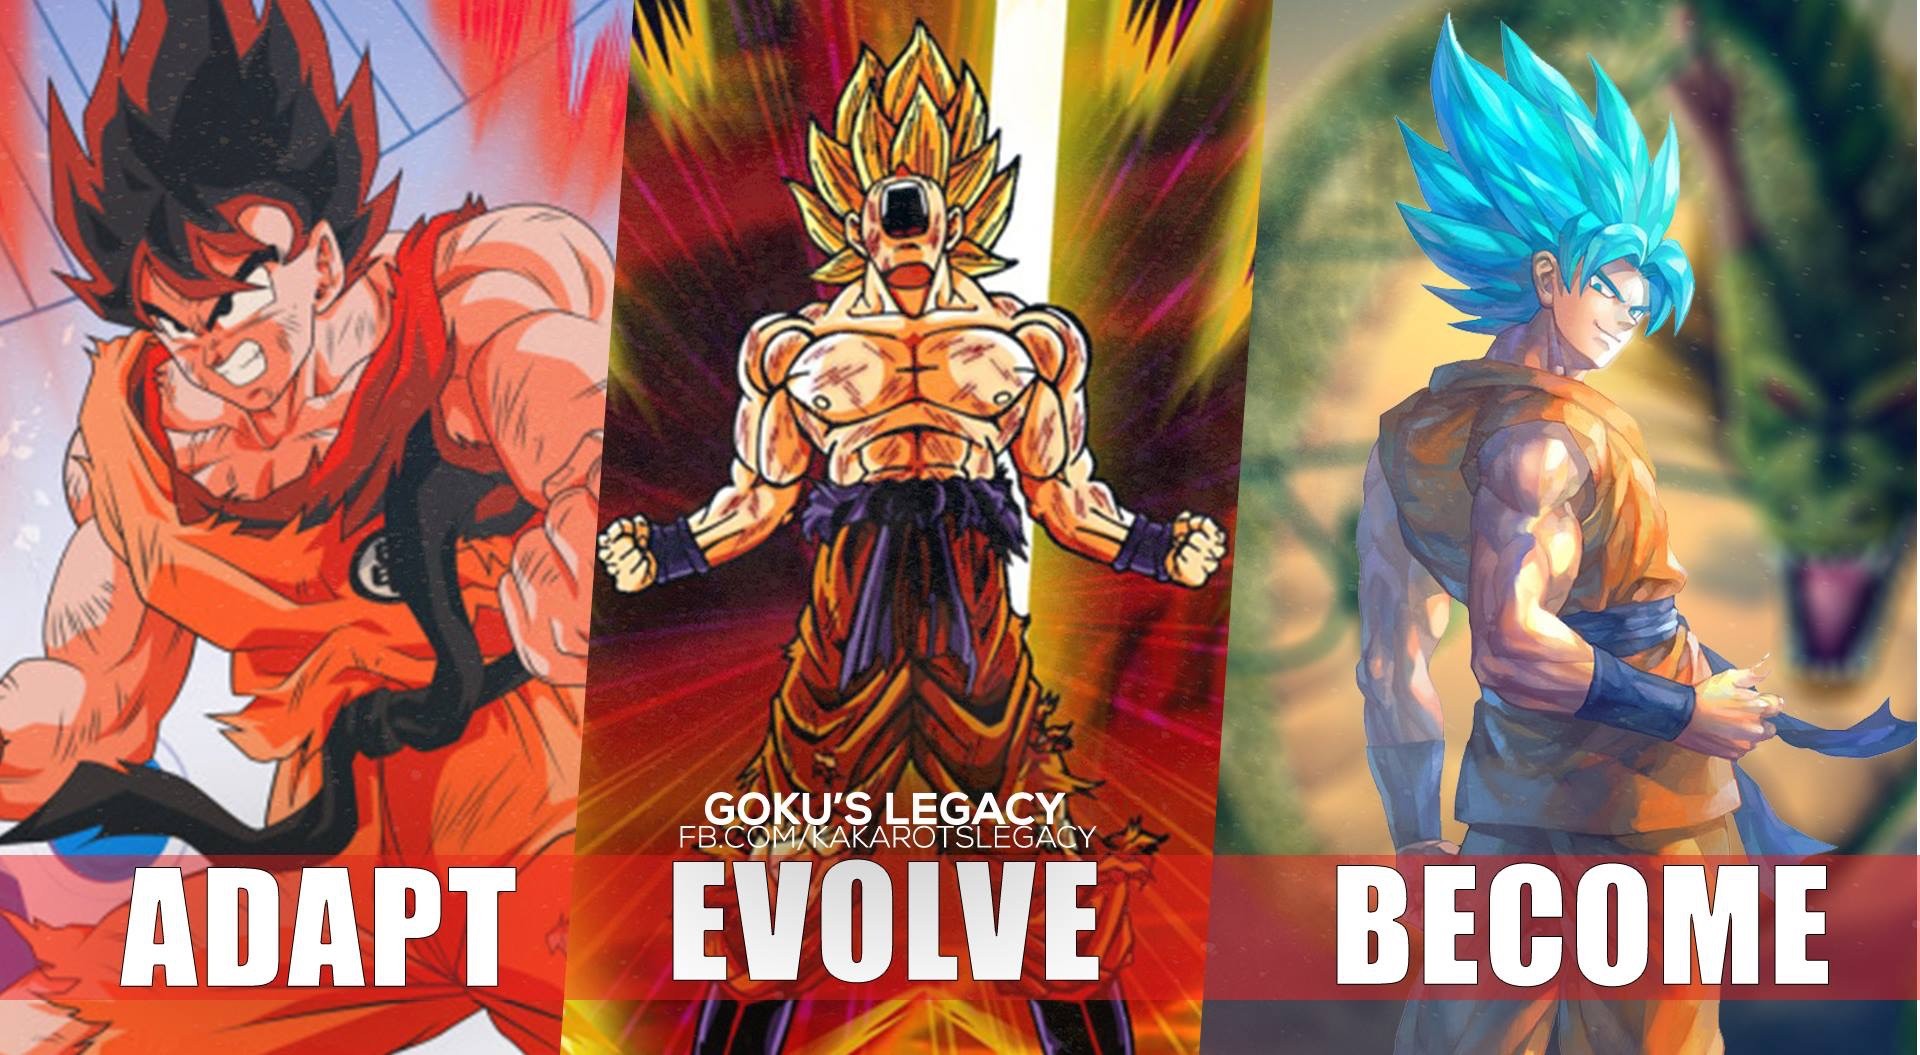 Dragon Ball Z Goku Super Saiyan God Wallpapers